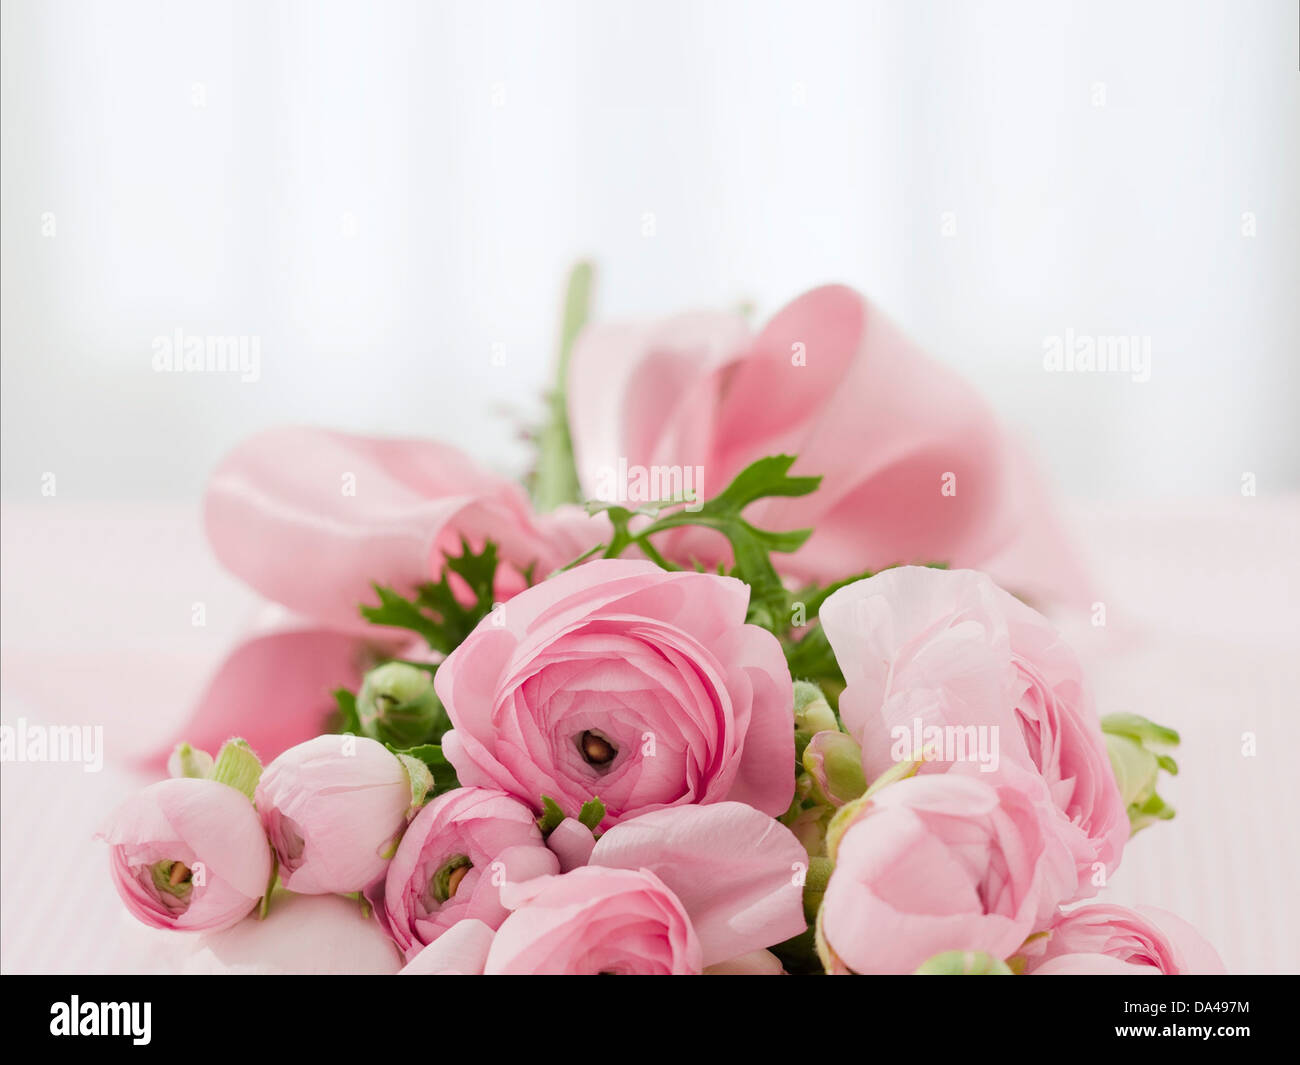 folleto Oferta Todo el mundo Bouquet de rosas felicitaciones arreglo de flores Fotografía de stock -  Alamy